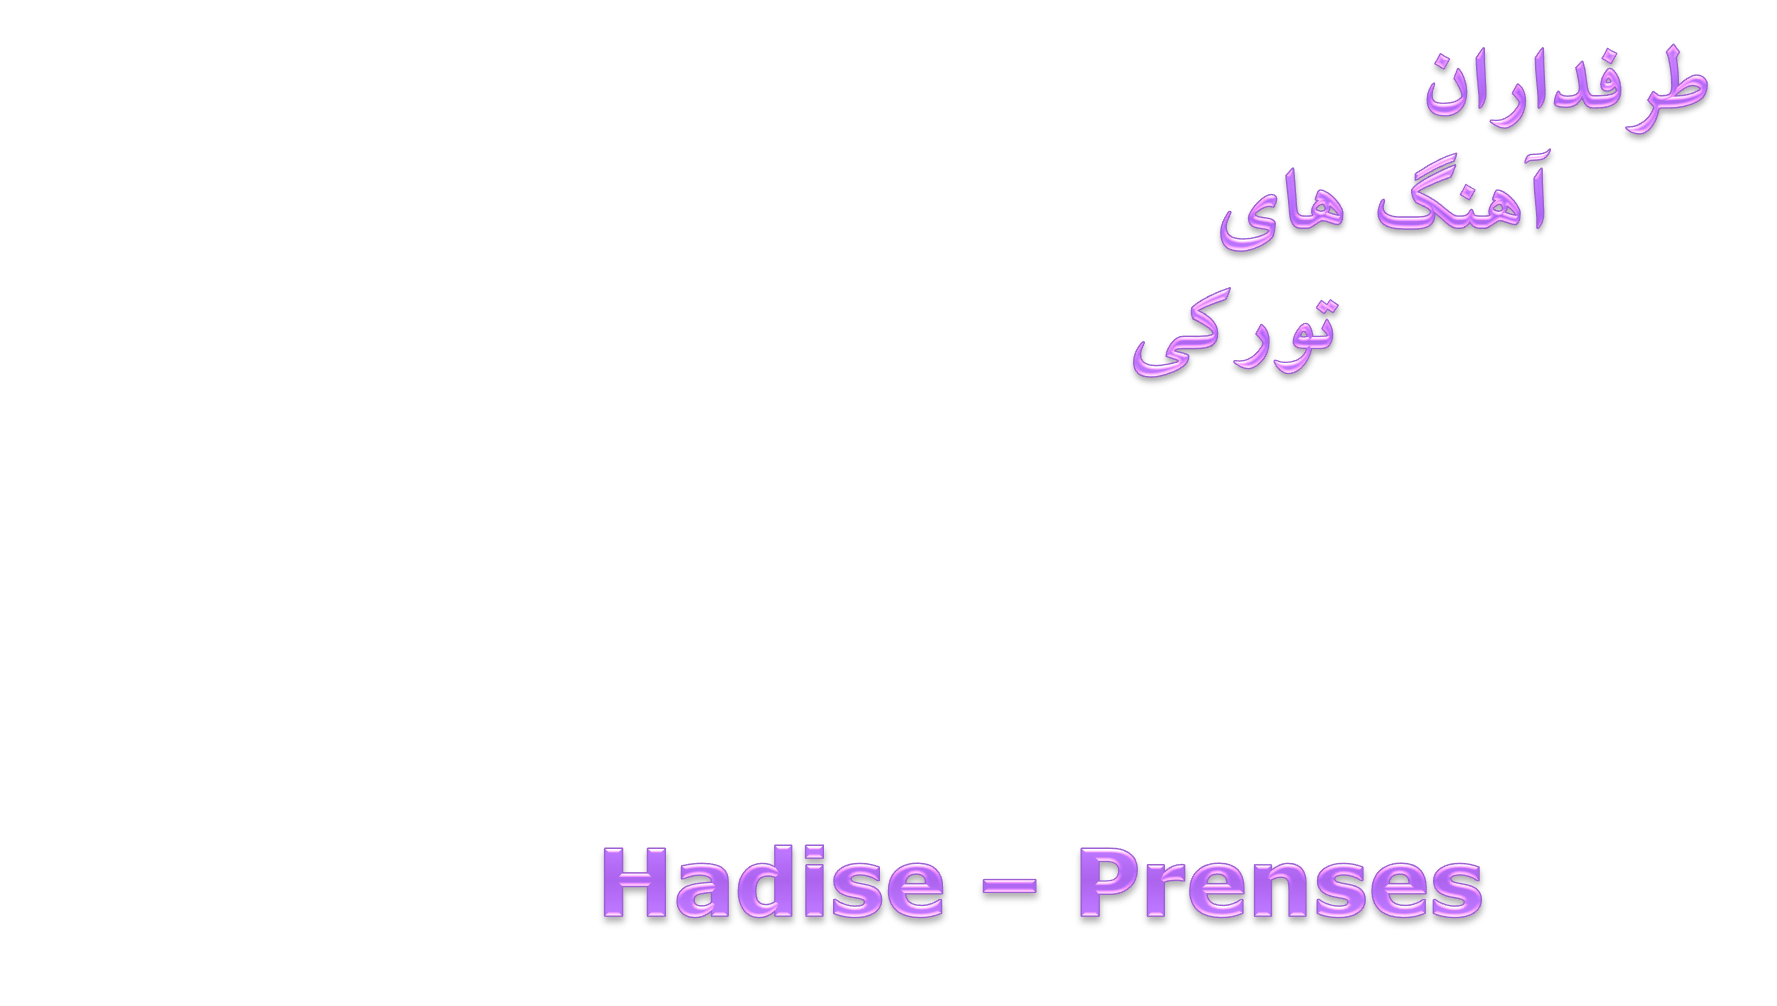 دانلود آهنگ زیبا از Hadise بنام Prenses